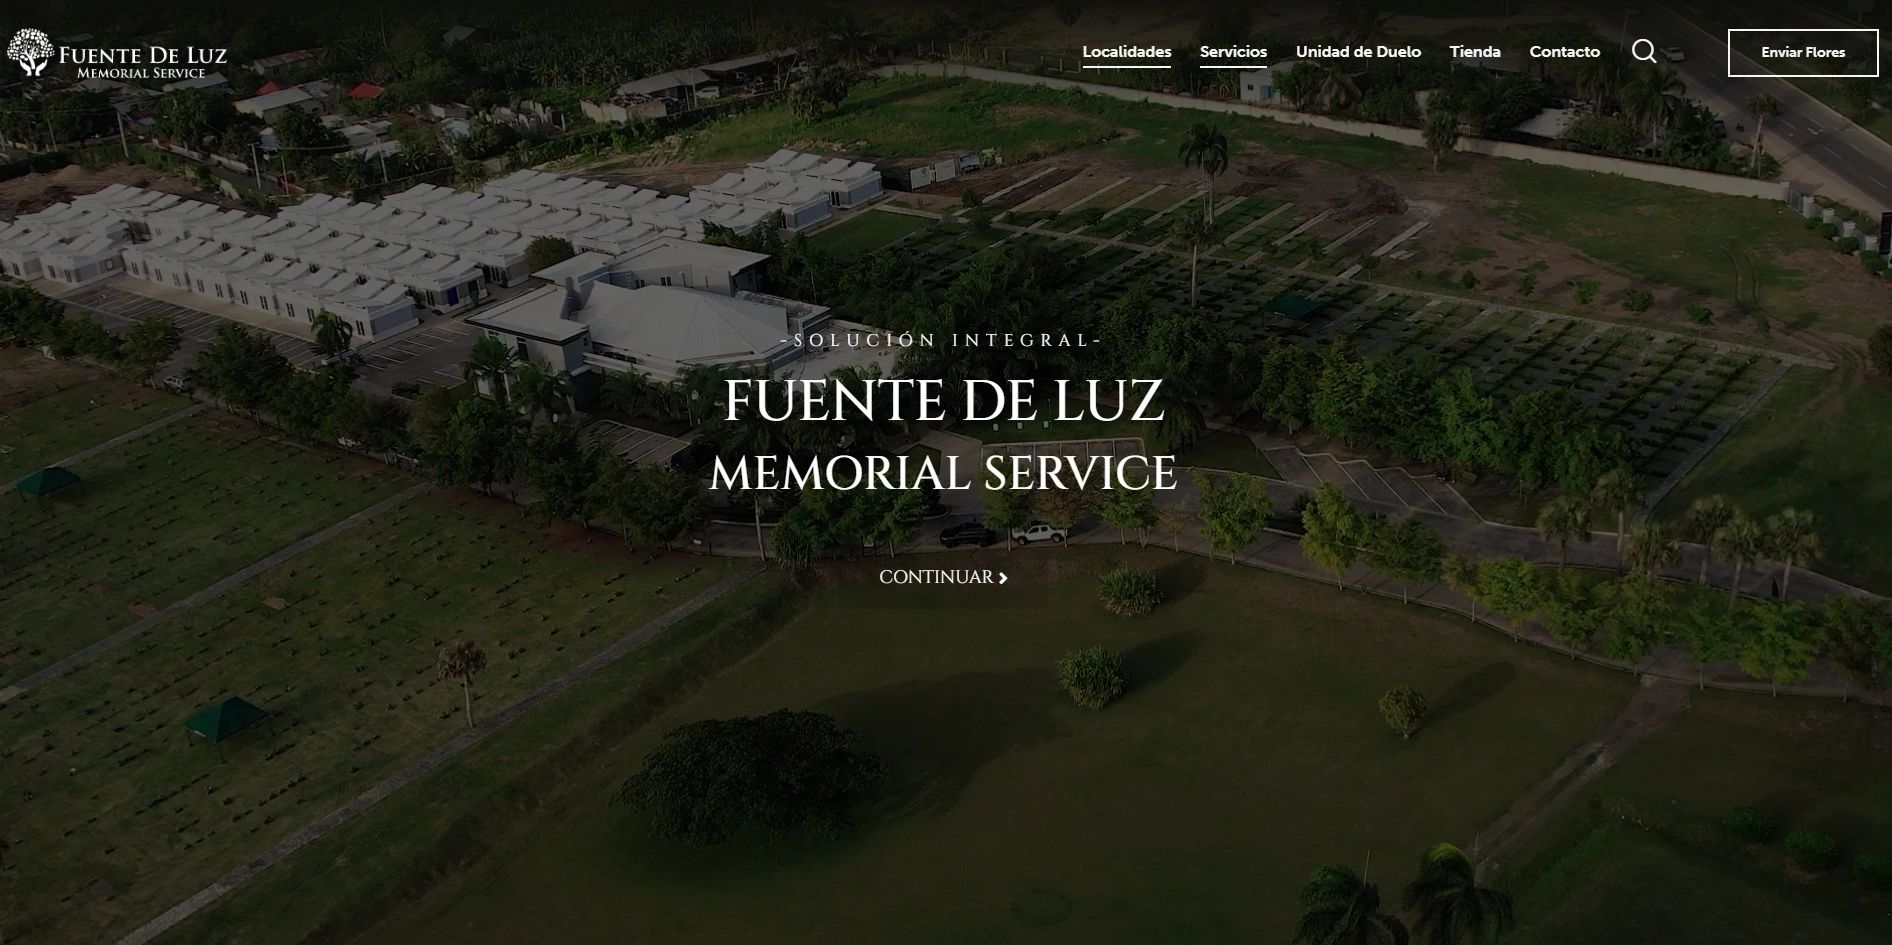 Portada de la pagina web del parque memorial y funeraria fuente de luz ubicado en la región del Ciba